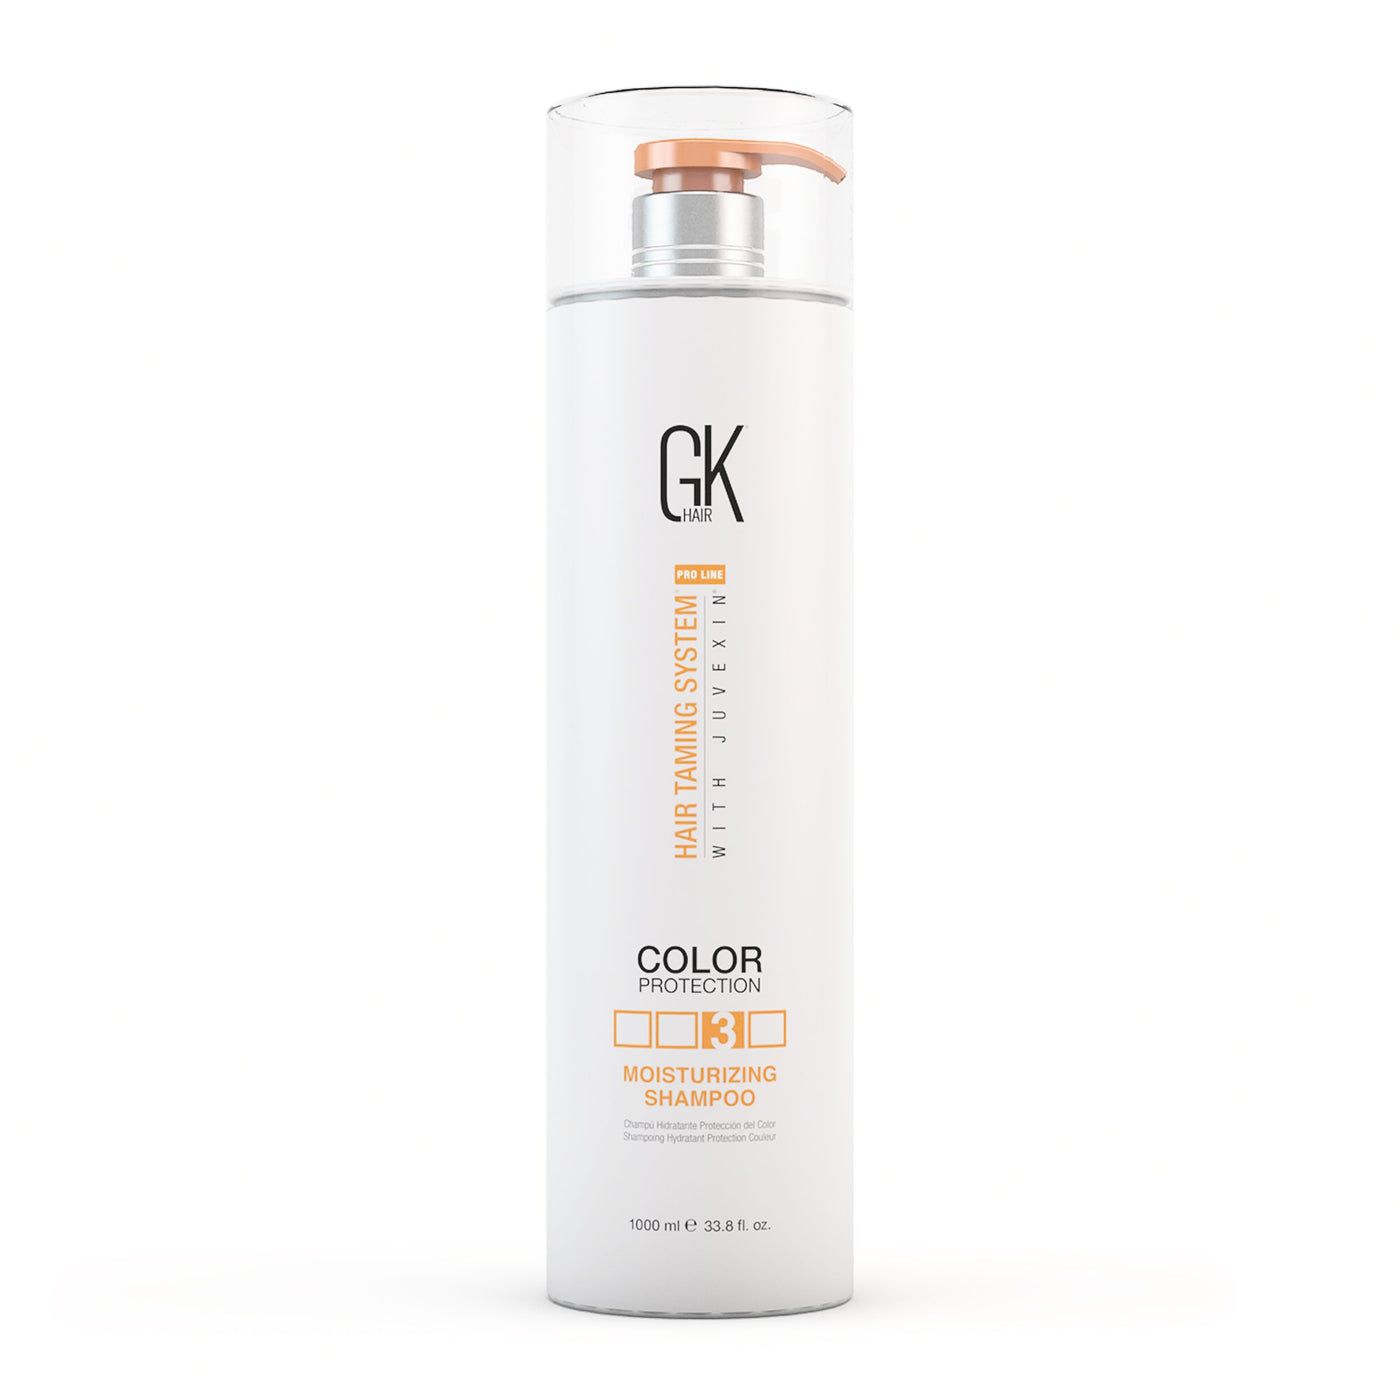 Moisturizing Shampoo 1000ml - GK Hair Europe